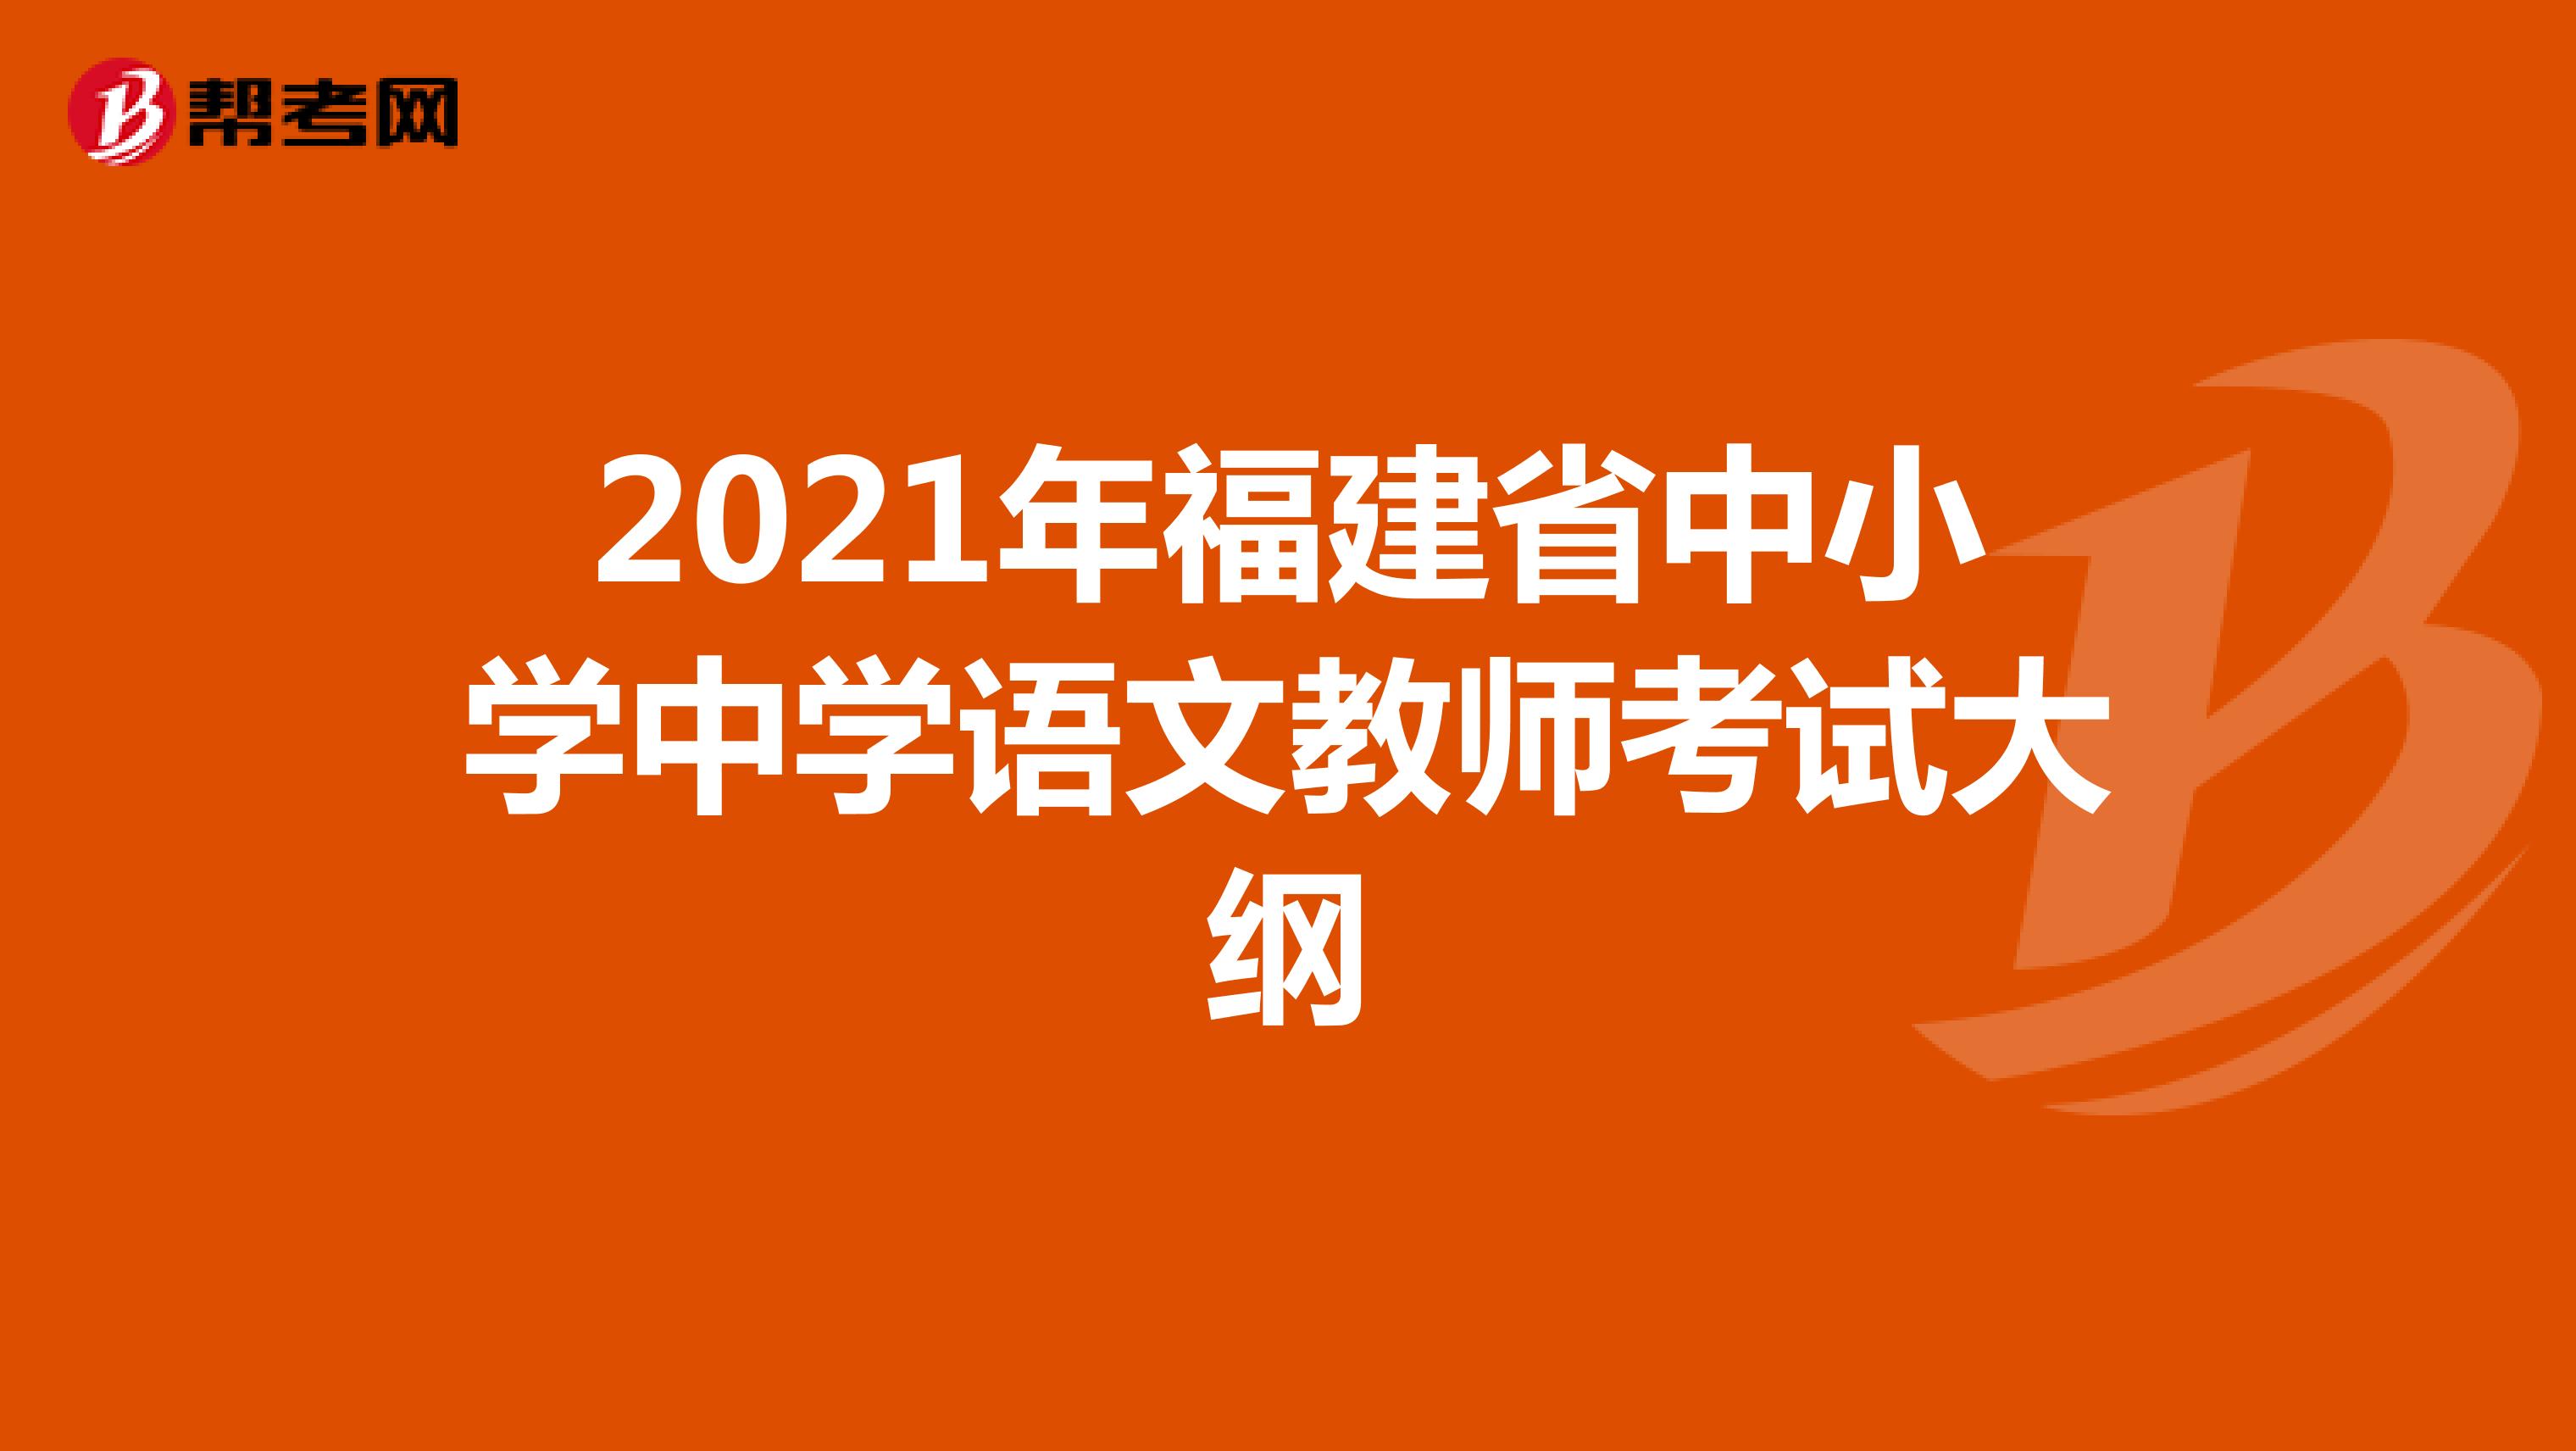 2021年福建省中小学中学语文教师考试大纲